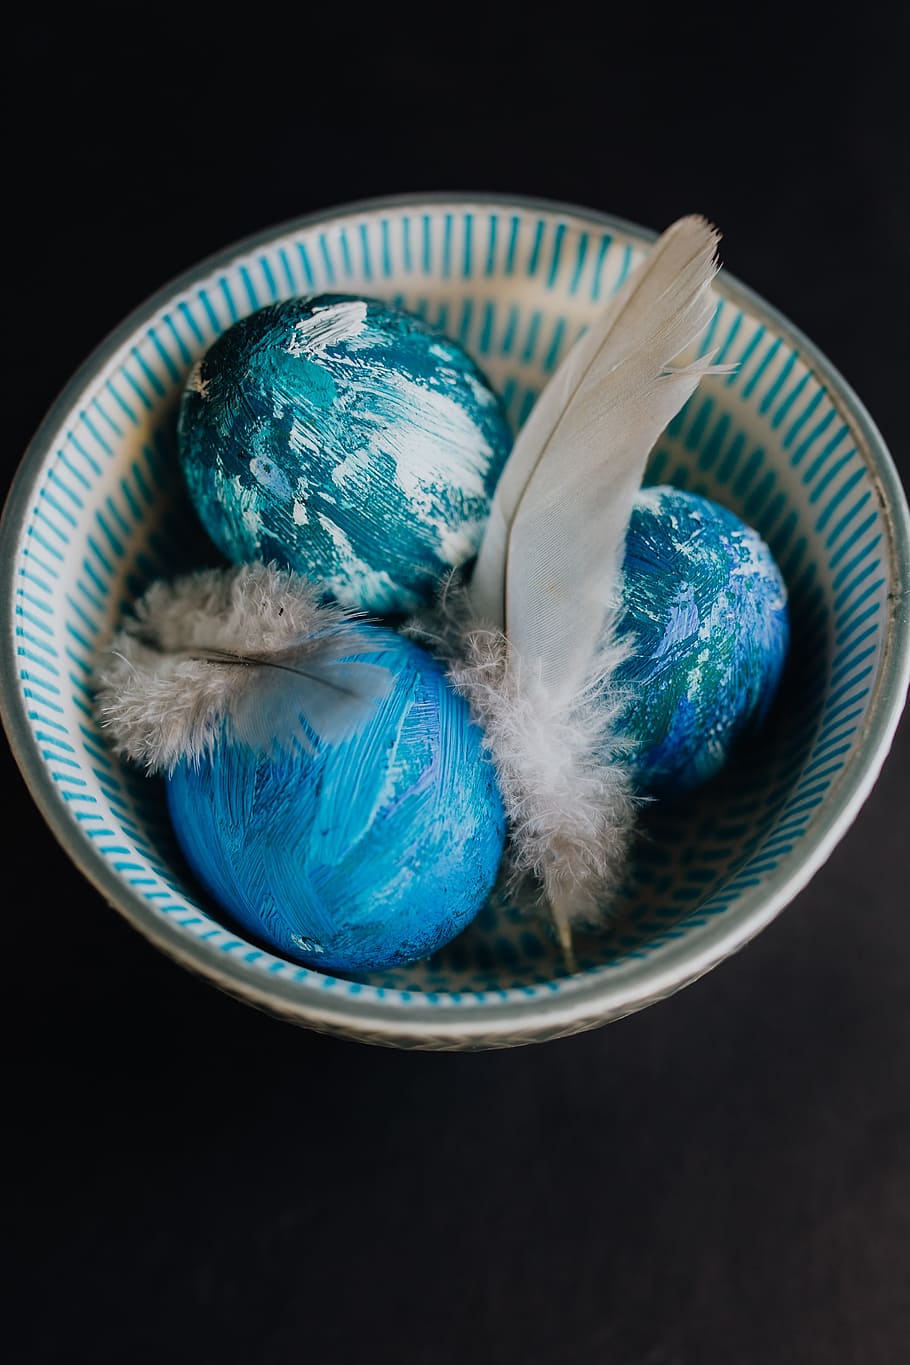 huevos de pascua azul, azul, huevos, colorido, pascua, pintado, adentro, naturaleza muerta, fondo negro, foto de estudio